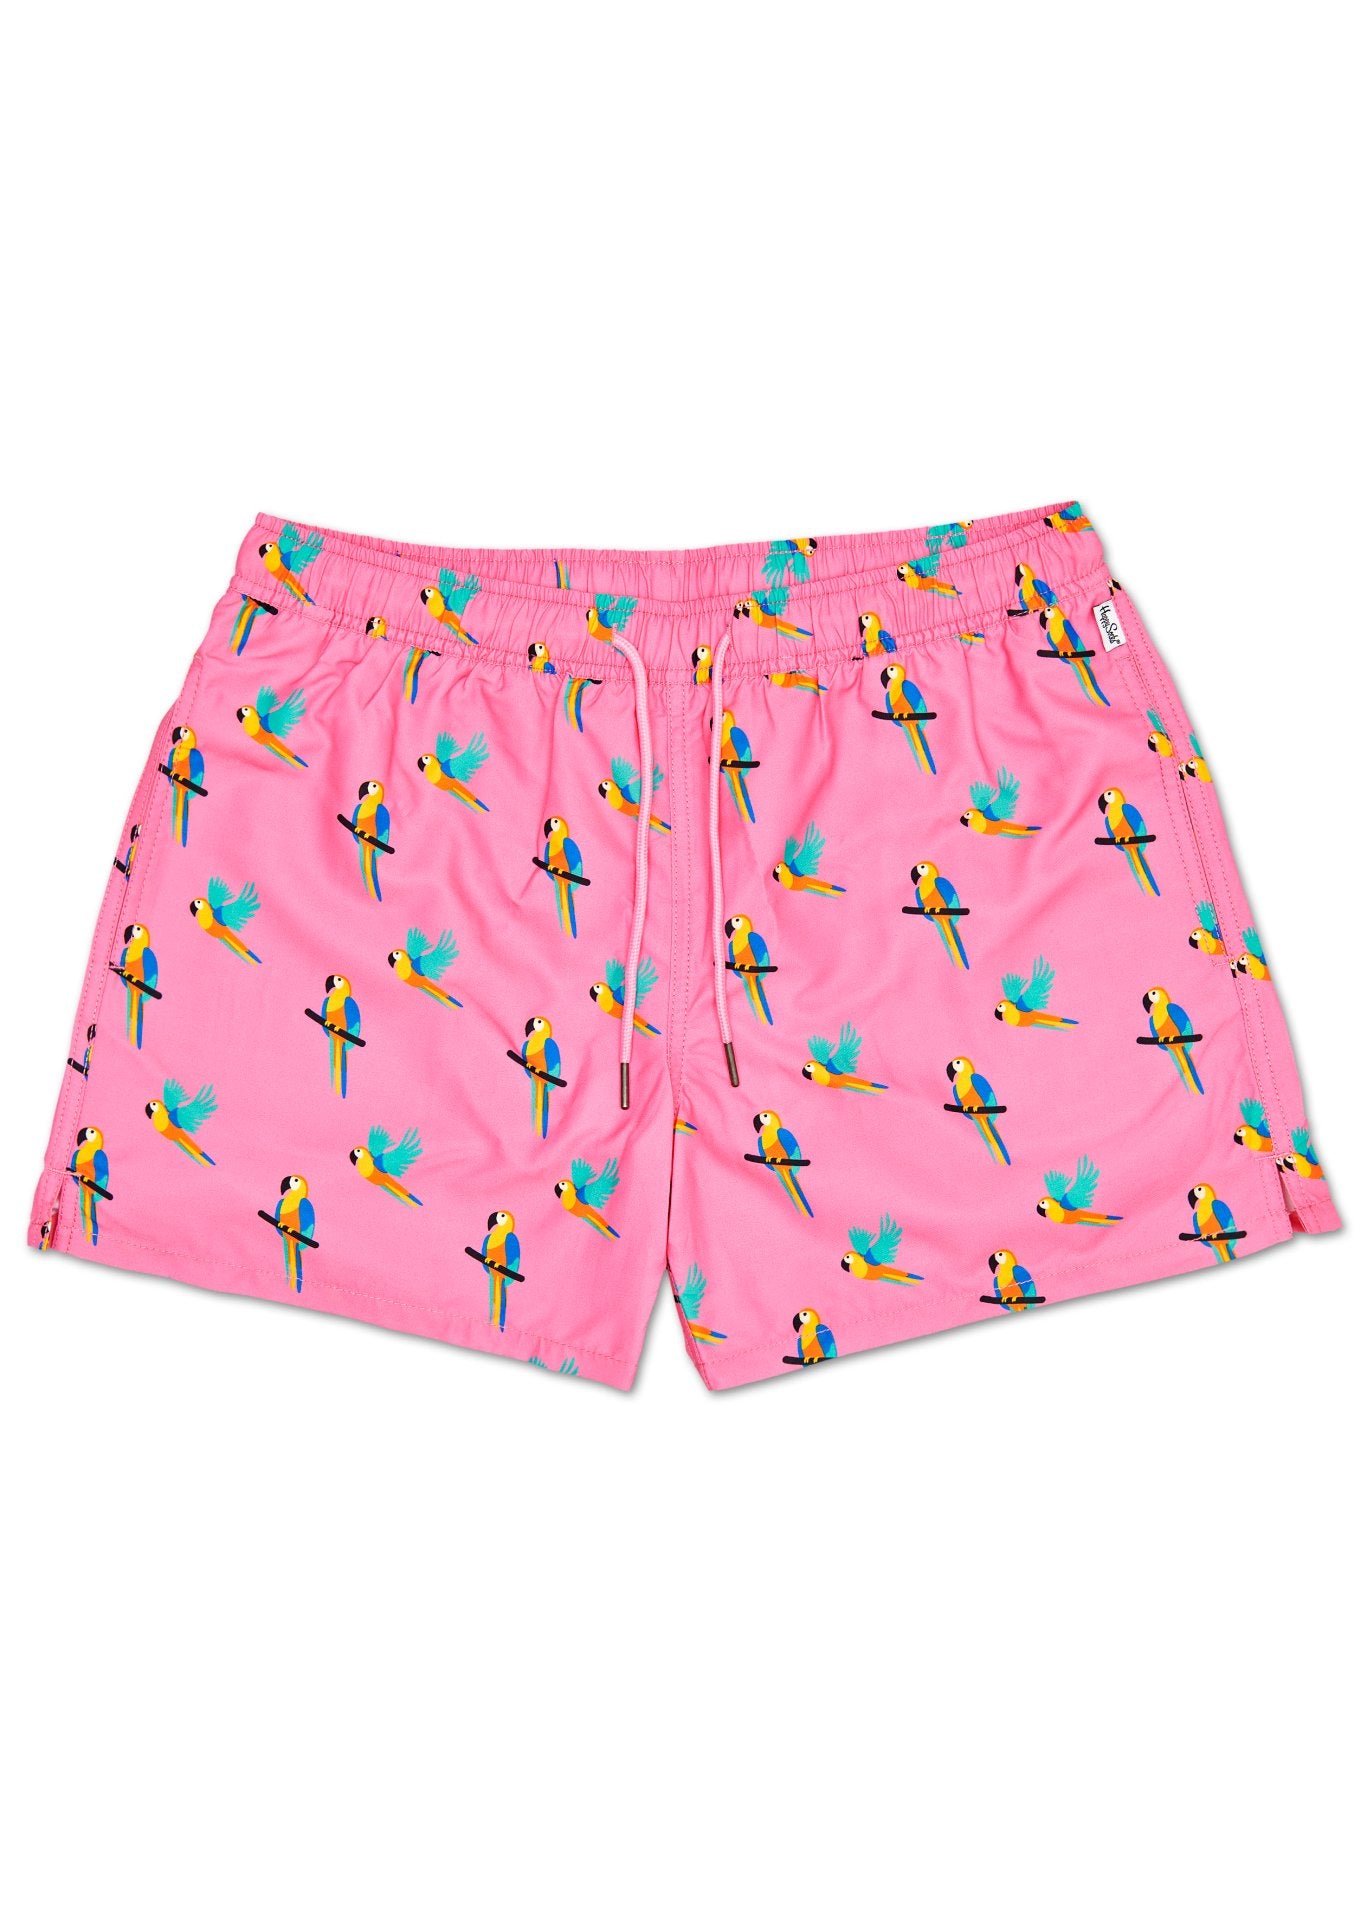 Růžové pánské plavky Happy Socks s papoušky, vzor Parrot